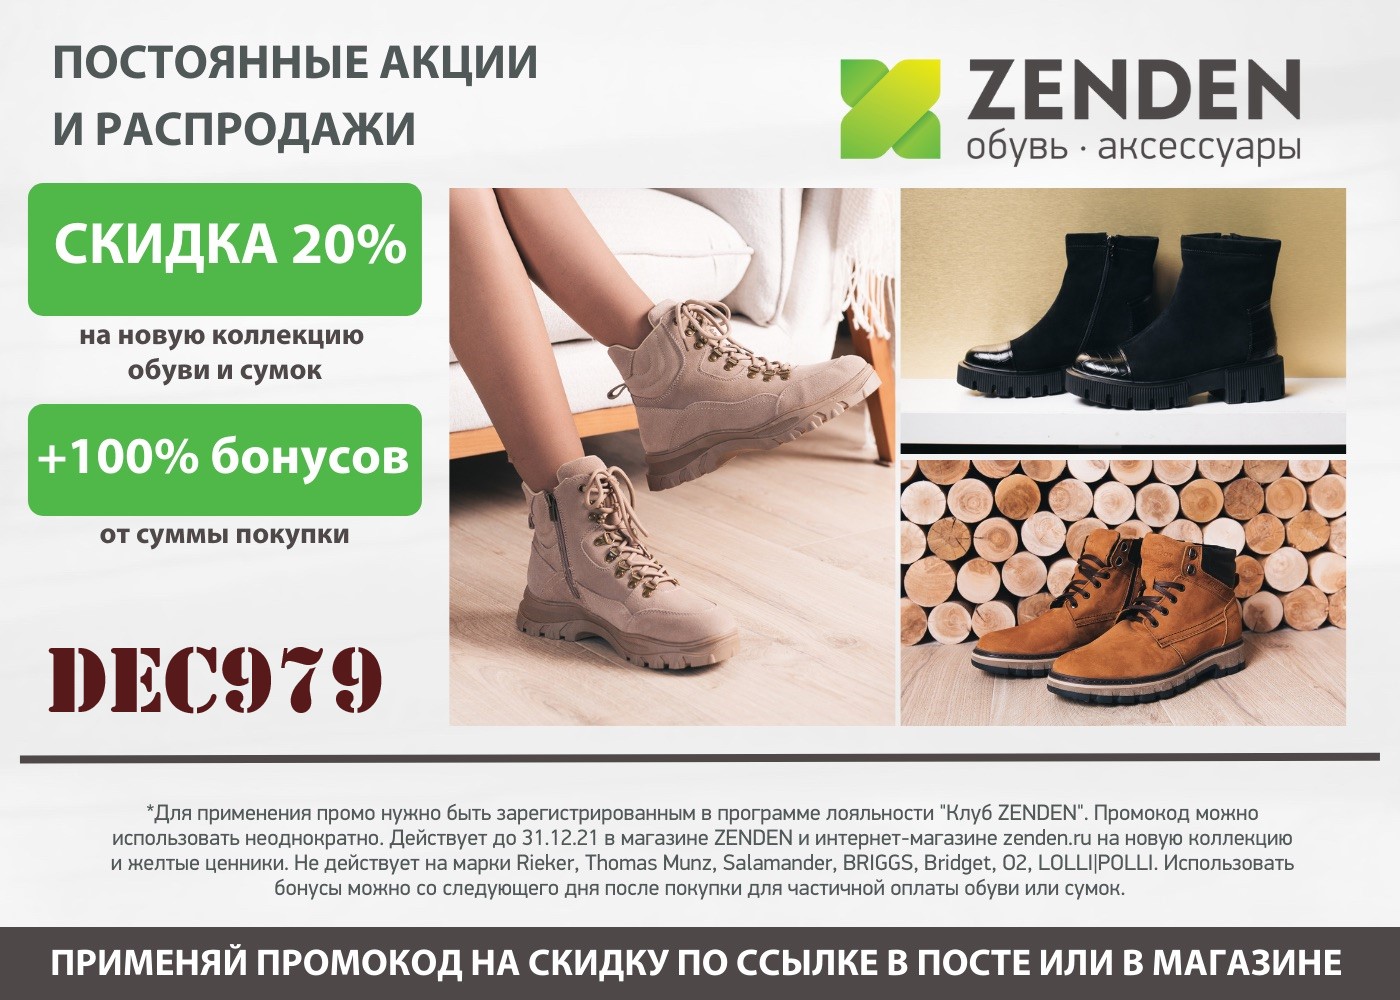 Зенден интернет магазин обуви женской распродажа москва официальный сайт каталог с ценами